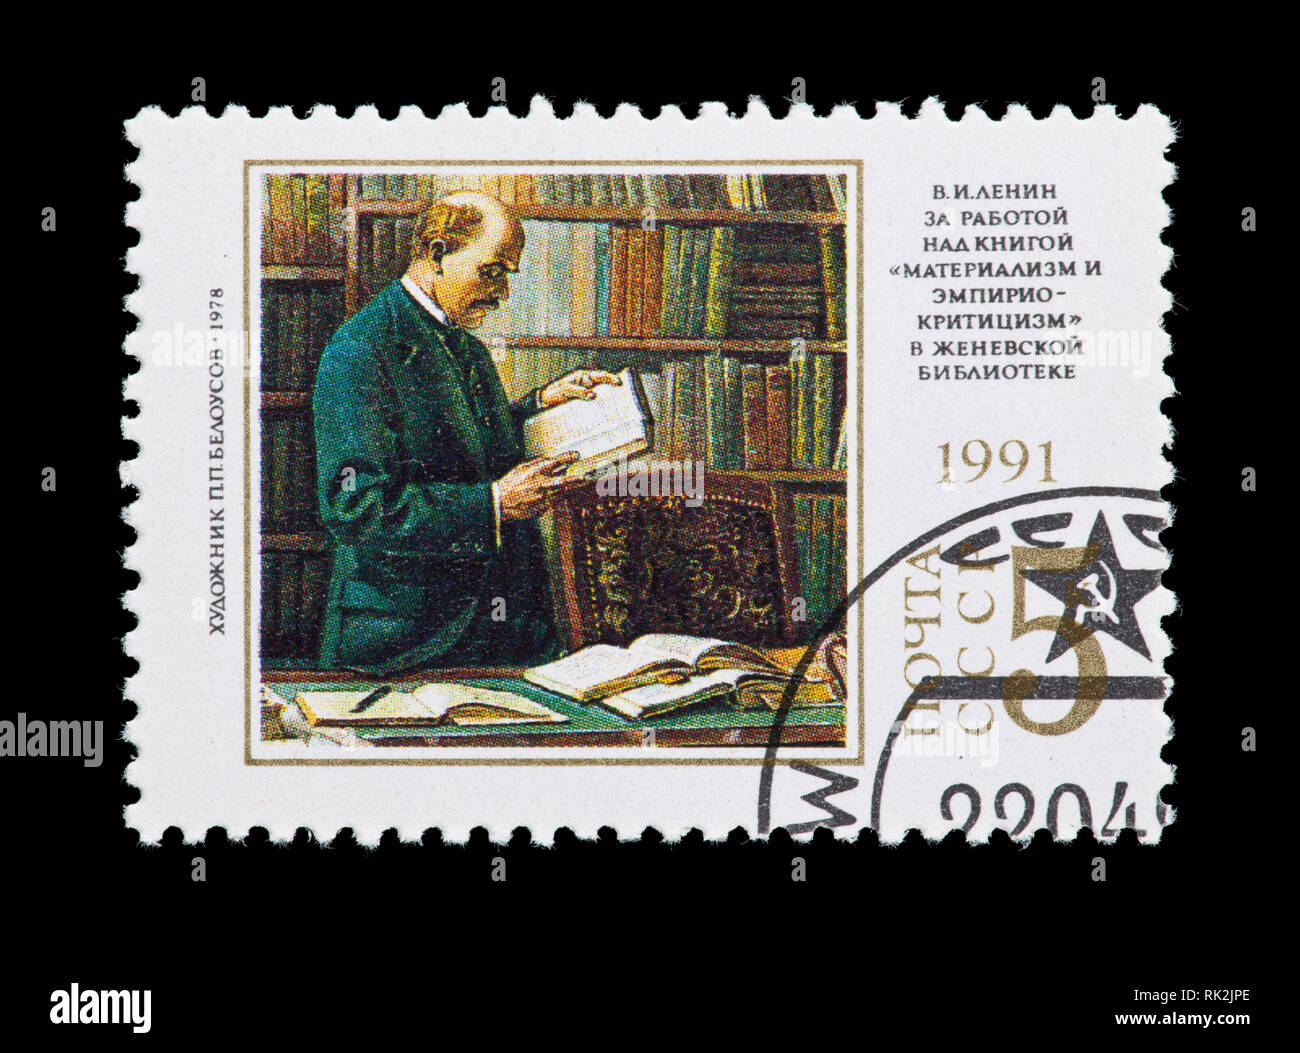 Briefmarke aus der Sowjetunion, die die S. S. Beloussow Gemälde "Lenin arbeiten an "aterialism und empirischen Kritik', Stockfoto